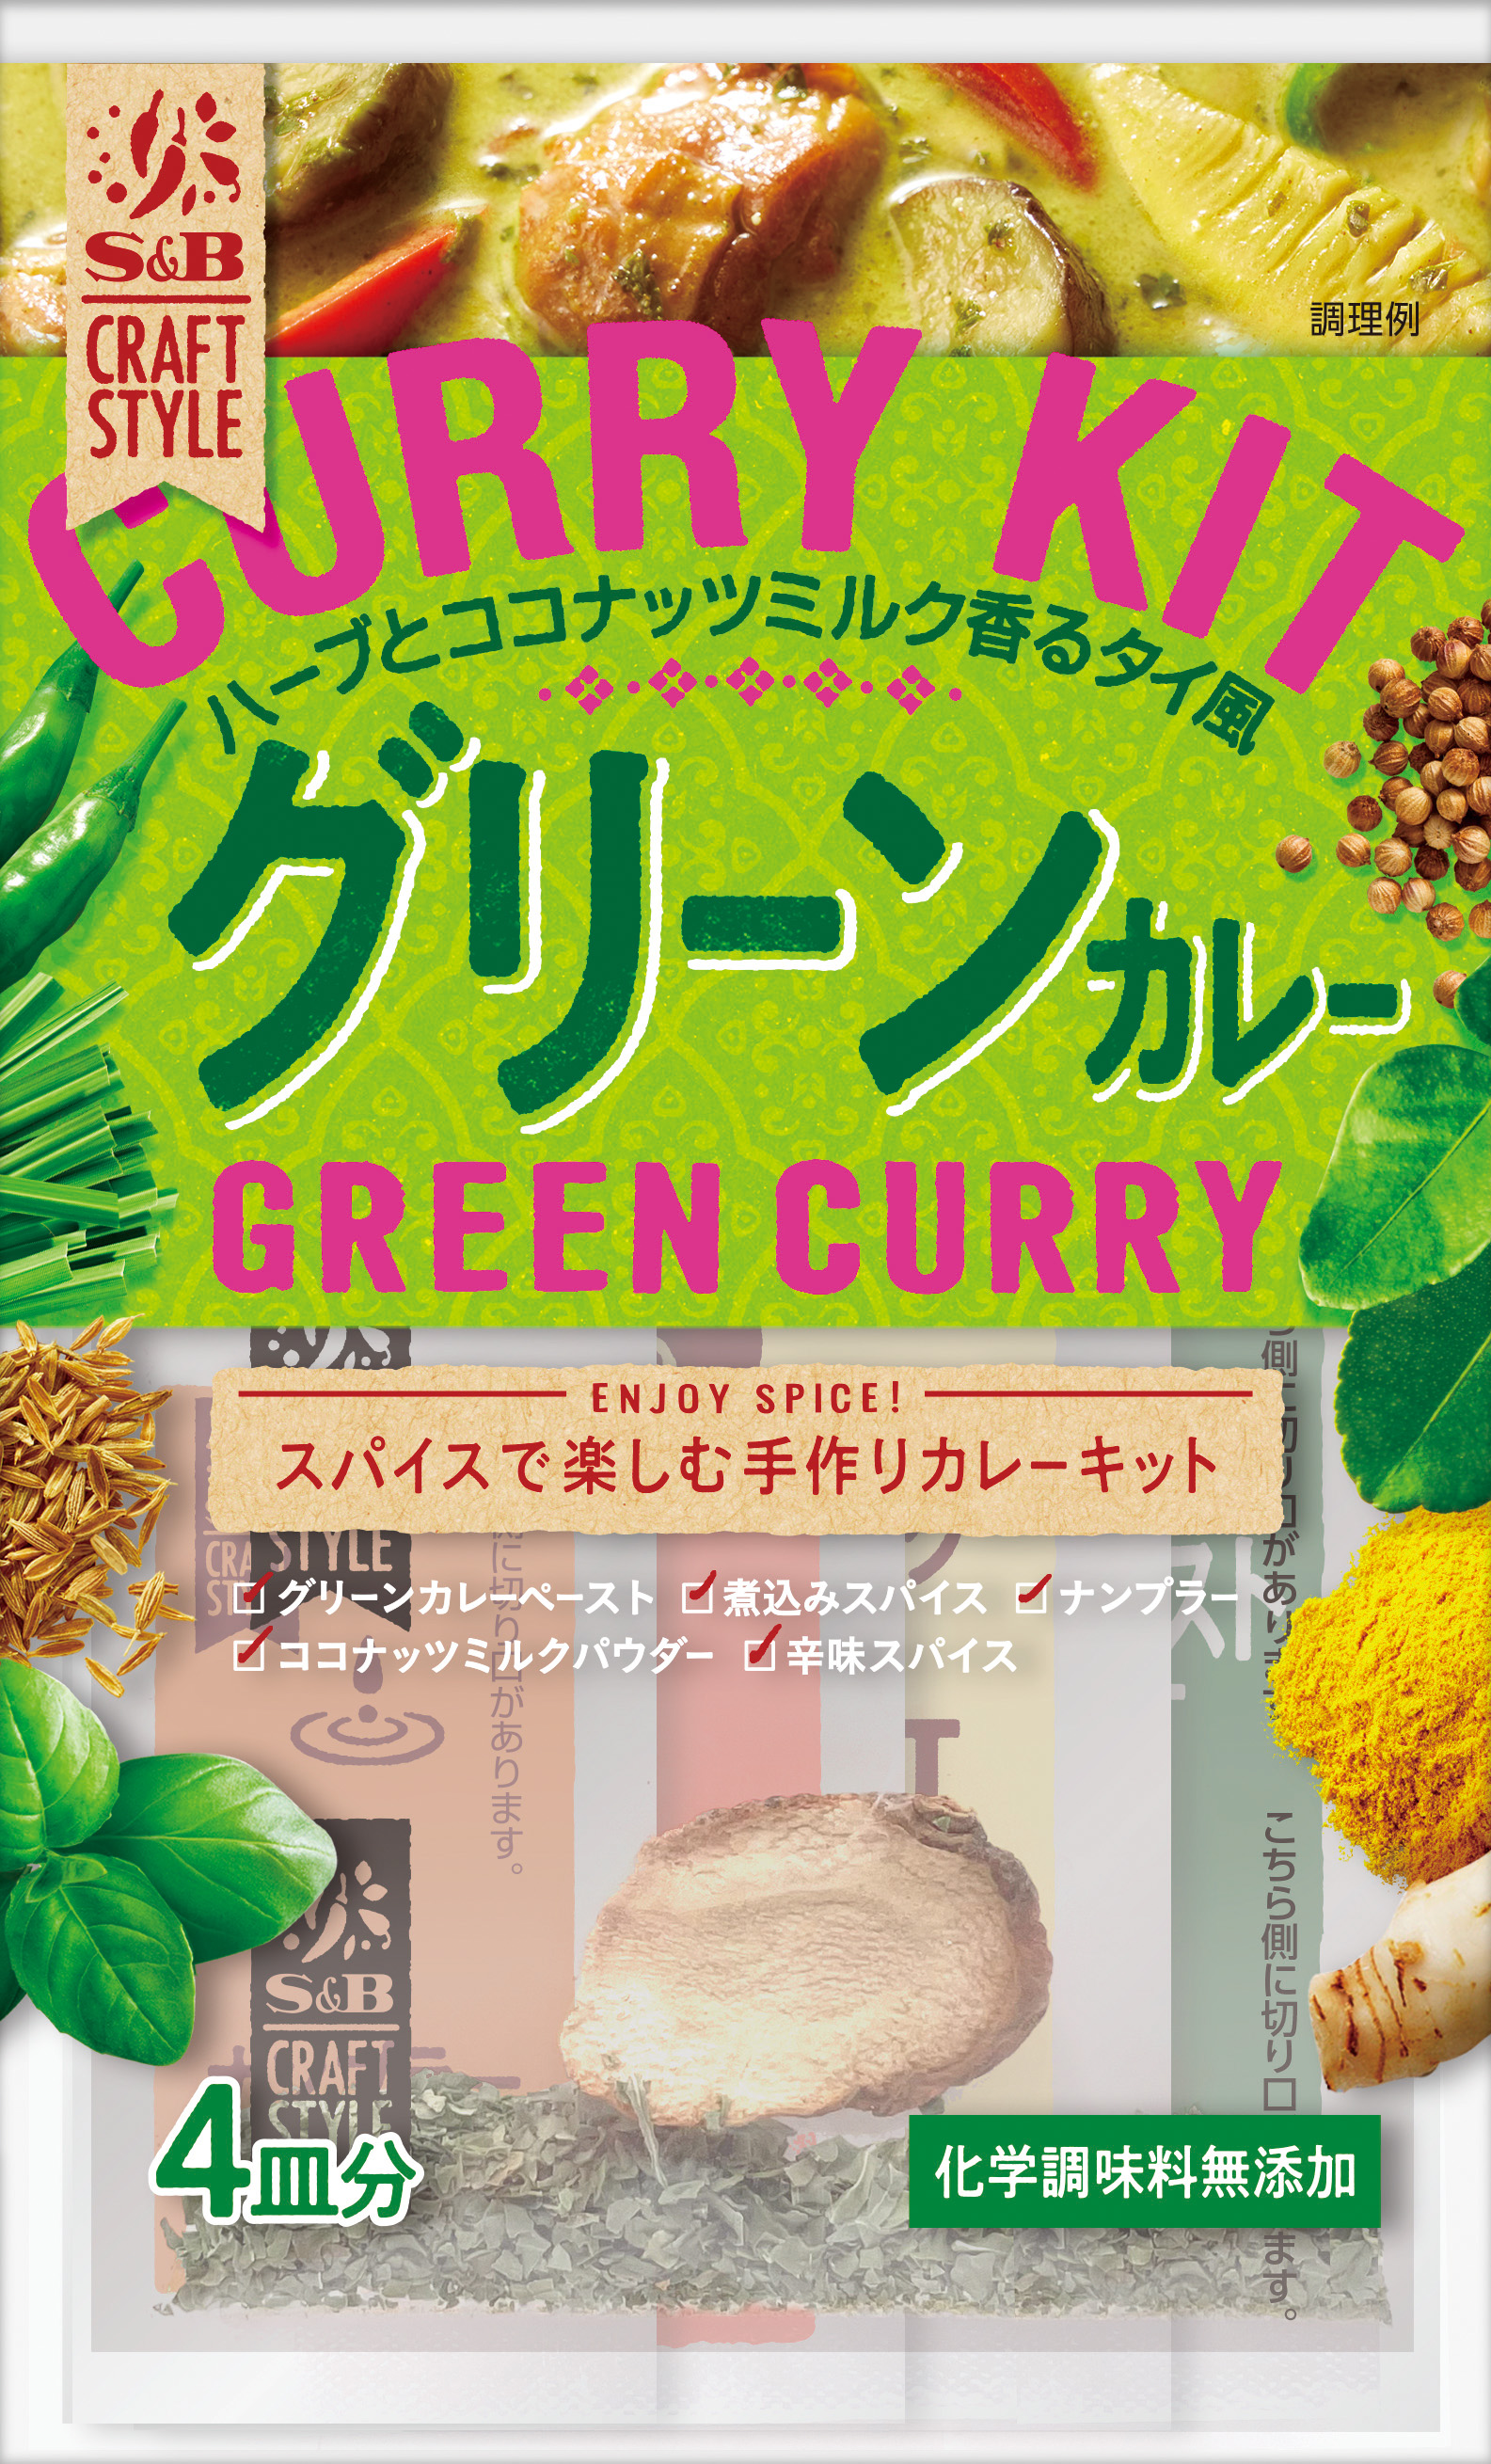 グリーンカレー作りがこれ一つで 本格手作りカレーキット 「Ｓ＆Ｂ ＣＲＡＦＴ ＳＴＹＬＥ グリーンカレー」２月７日 新発売｜エスビー食品 株式会社のプレスリリース